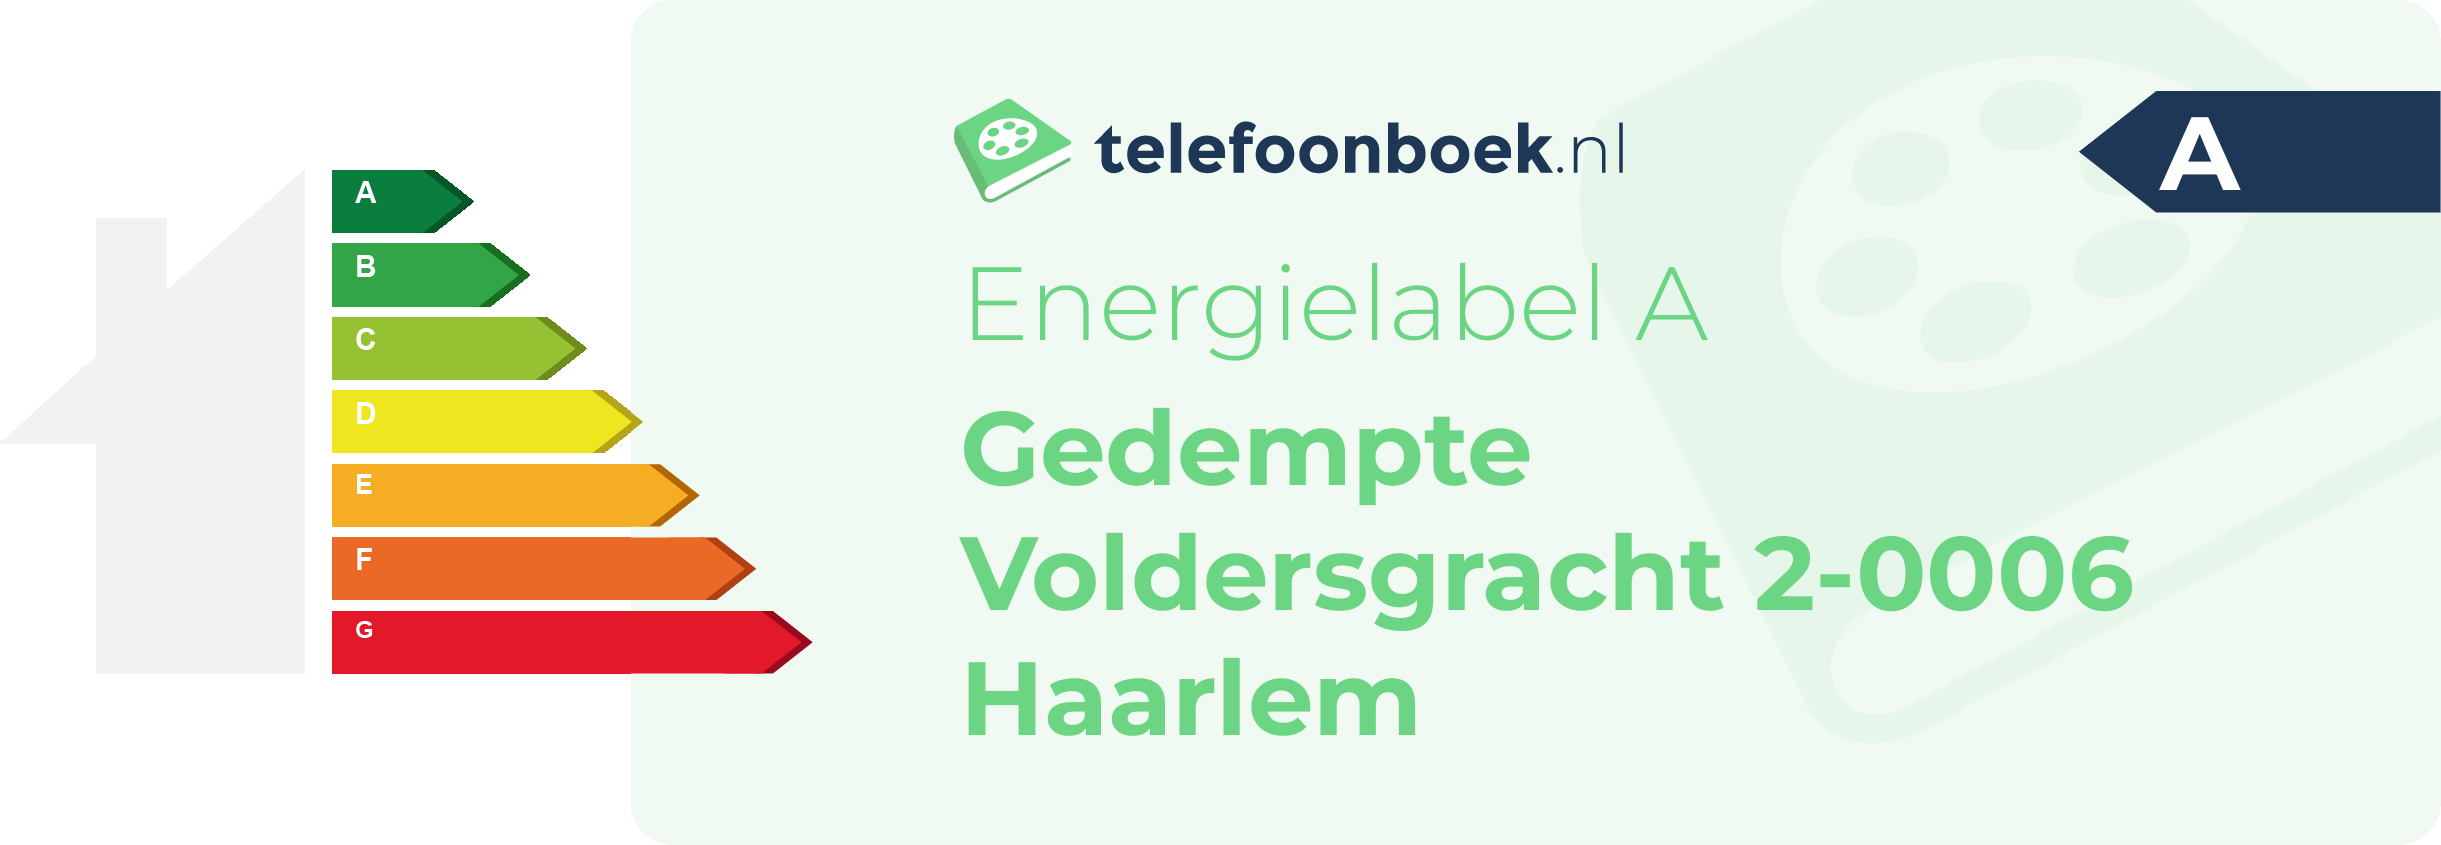 Energielabel Gedempte Voldersgracht 2-0006 Haarlem